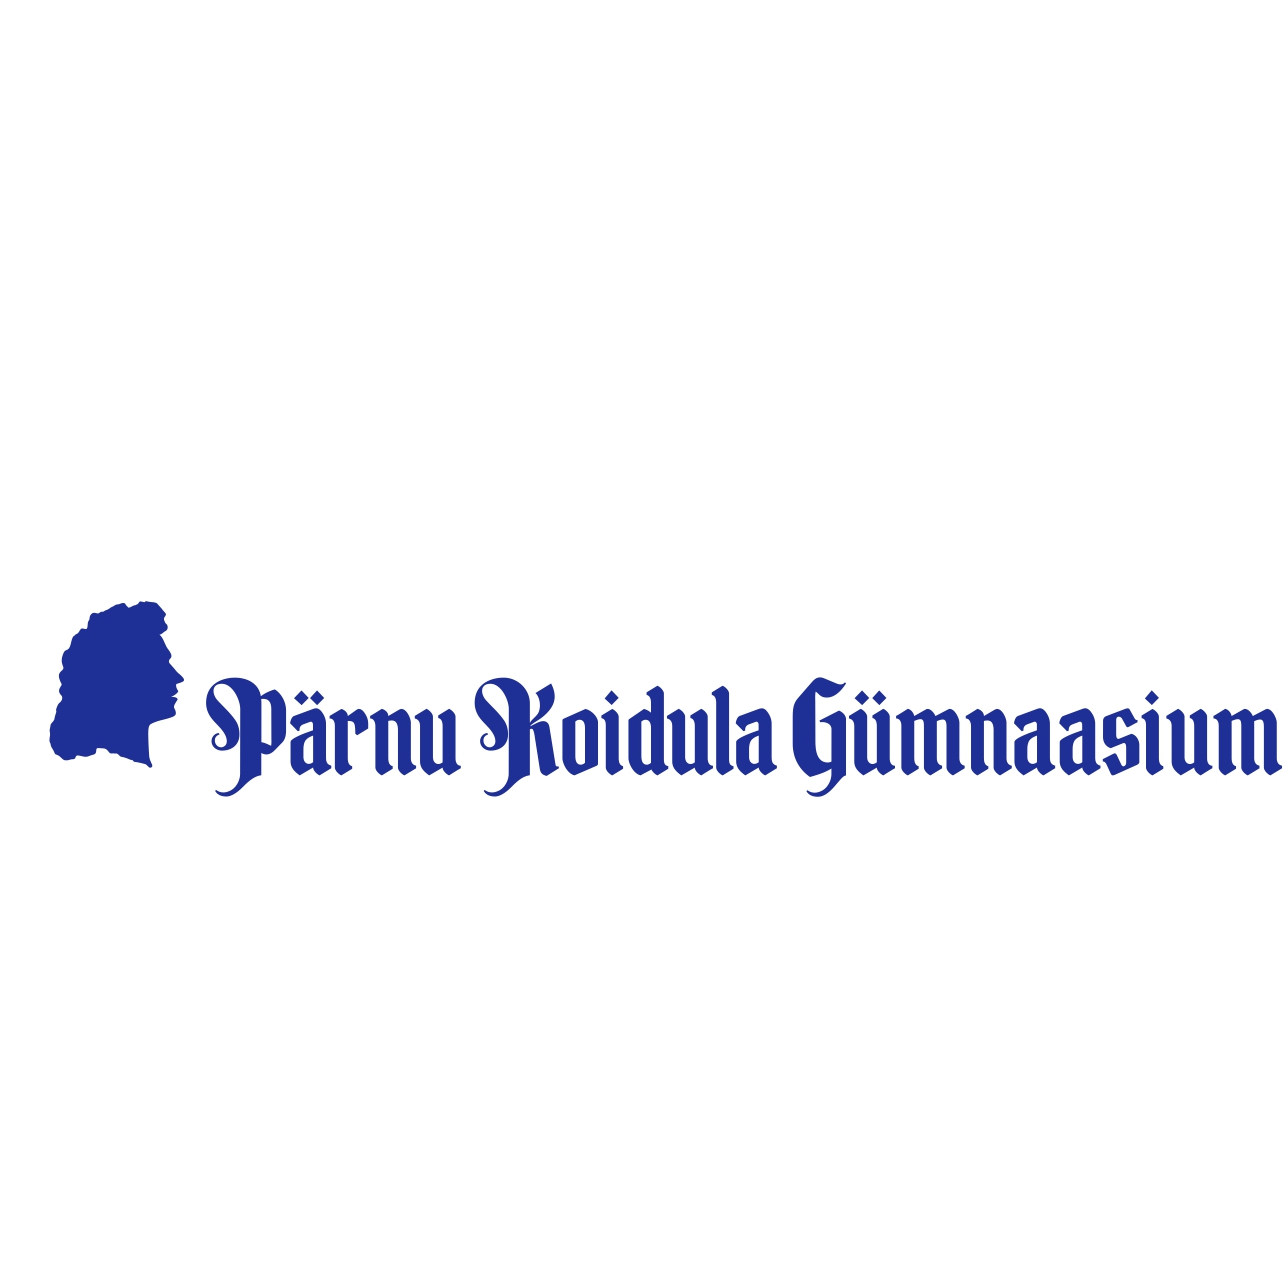 PÄRNU KOIDULA GÜMNAASIUM logo